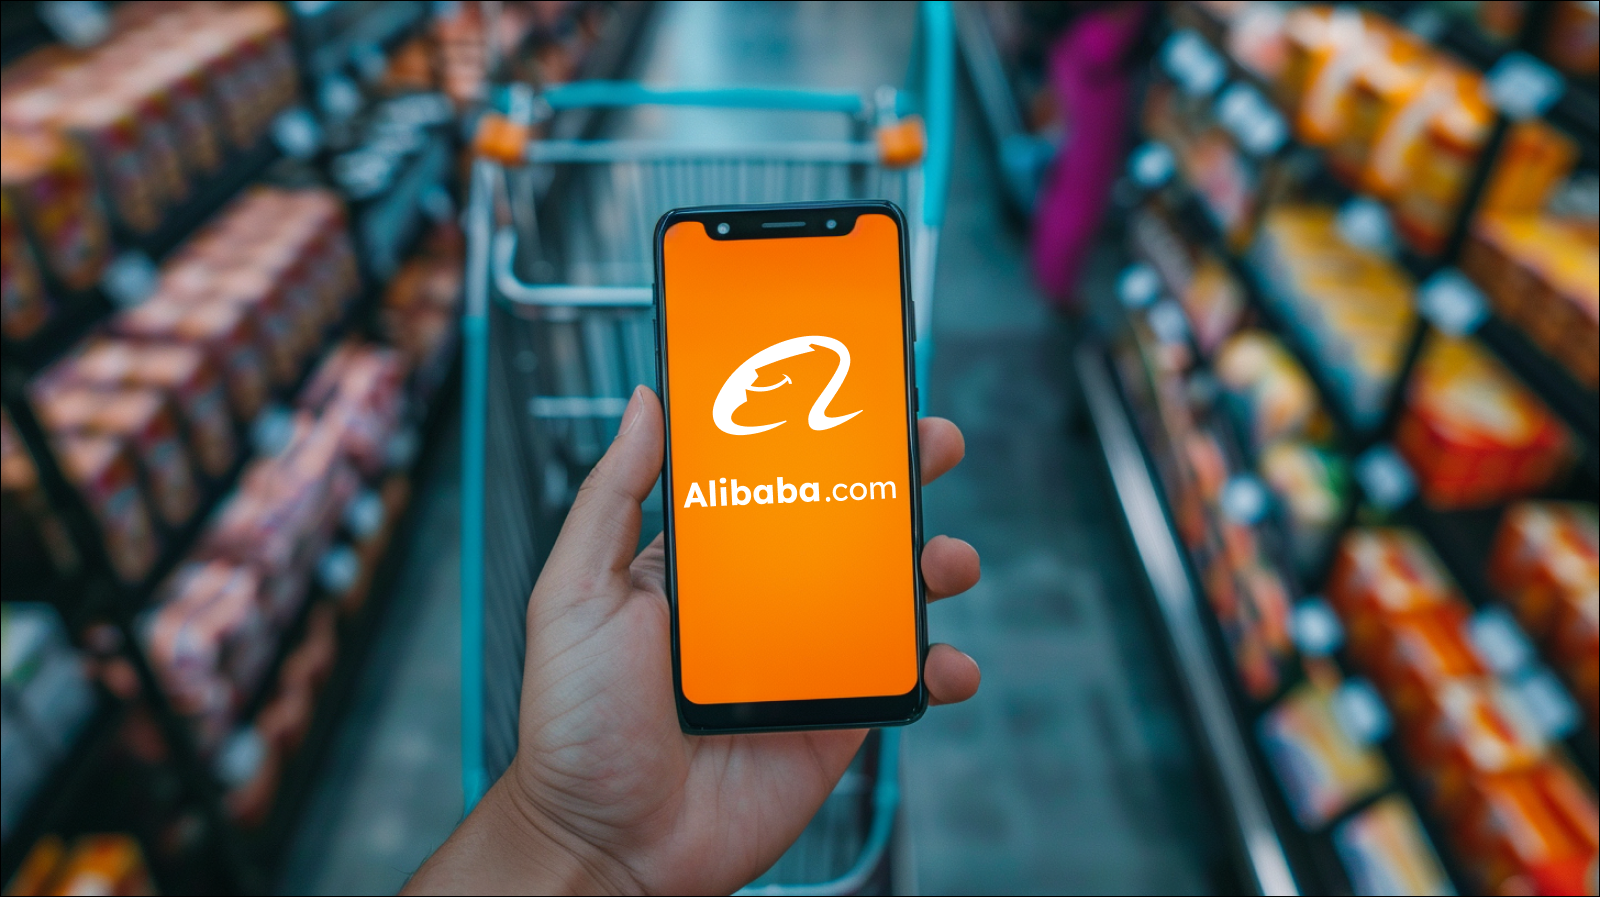 Eine Hand hält ein Smartphone mit dem Alibaba.com-Logo auf dem Bildschirm vor einem Einkaufswagen in einem Supermarkt.